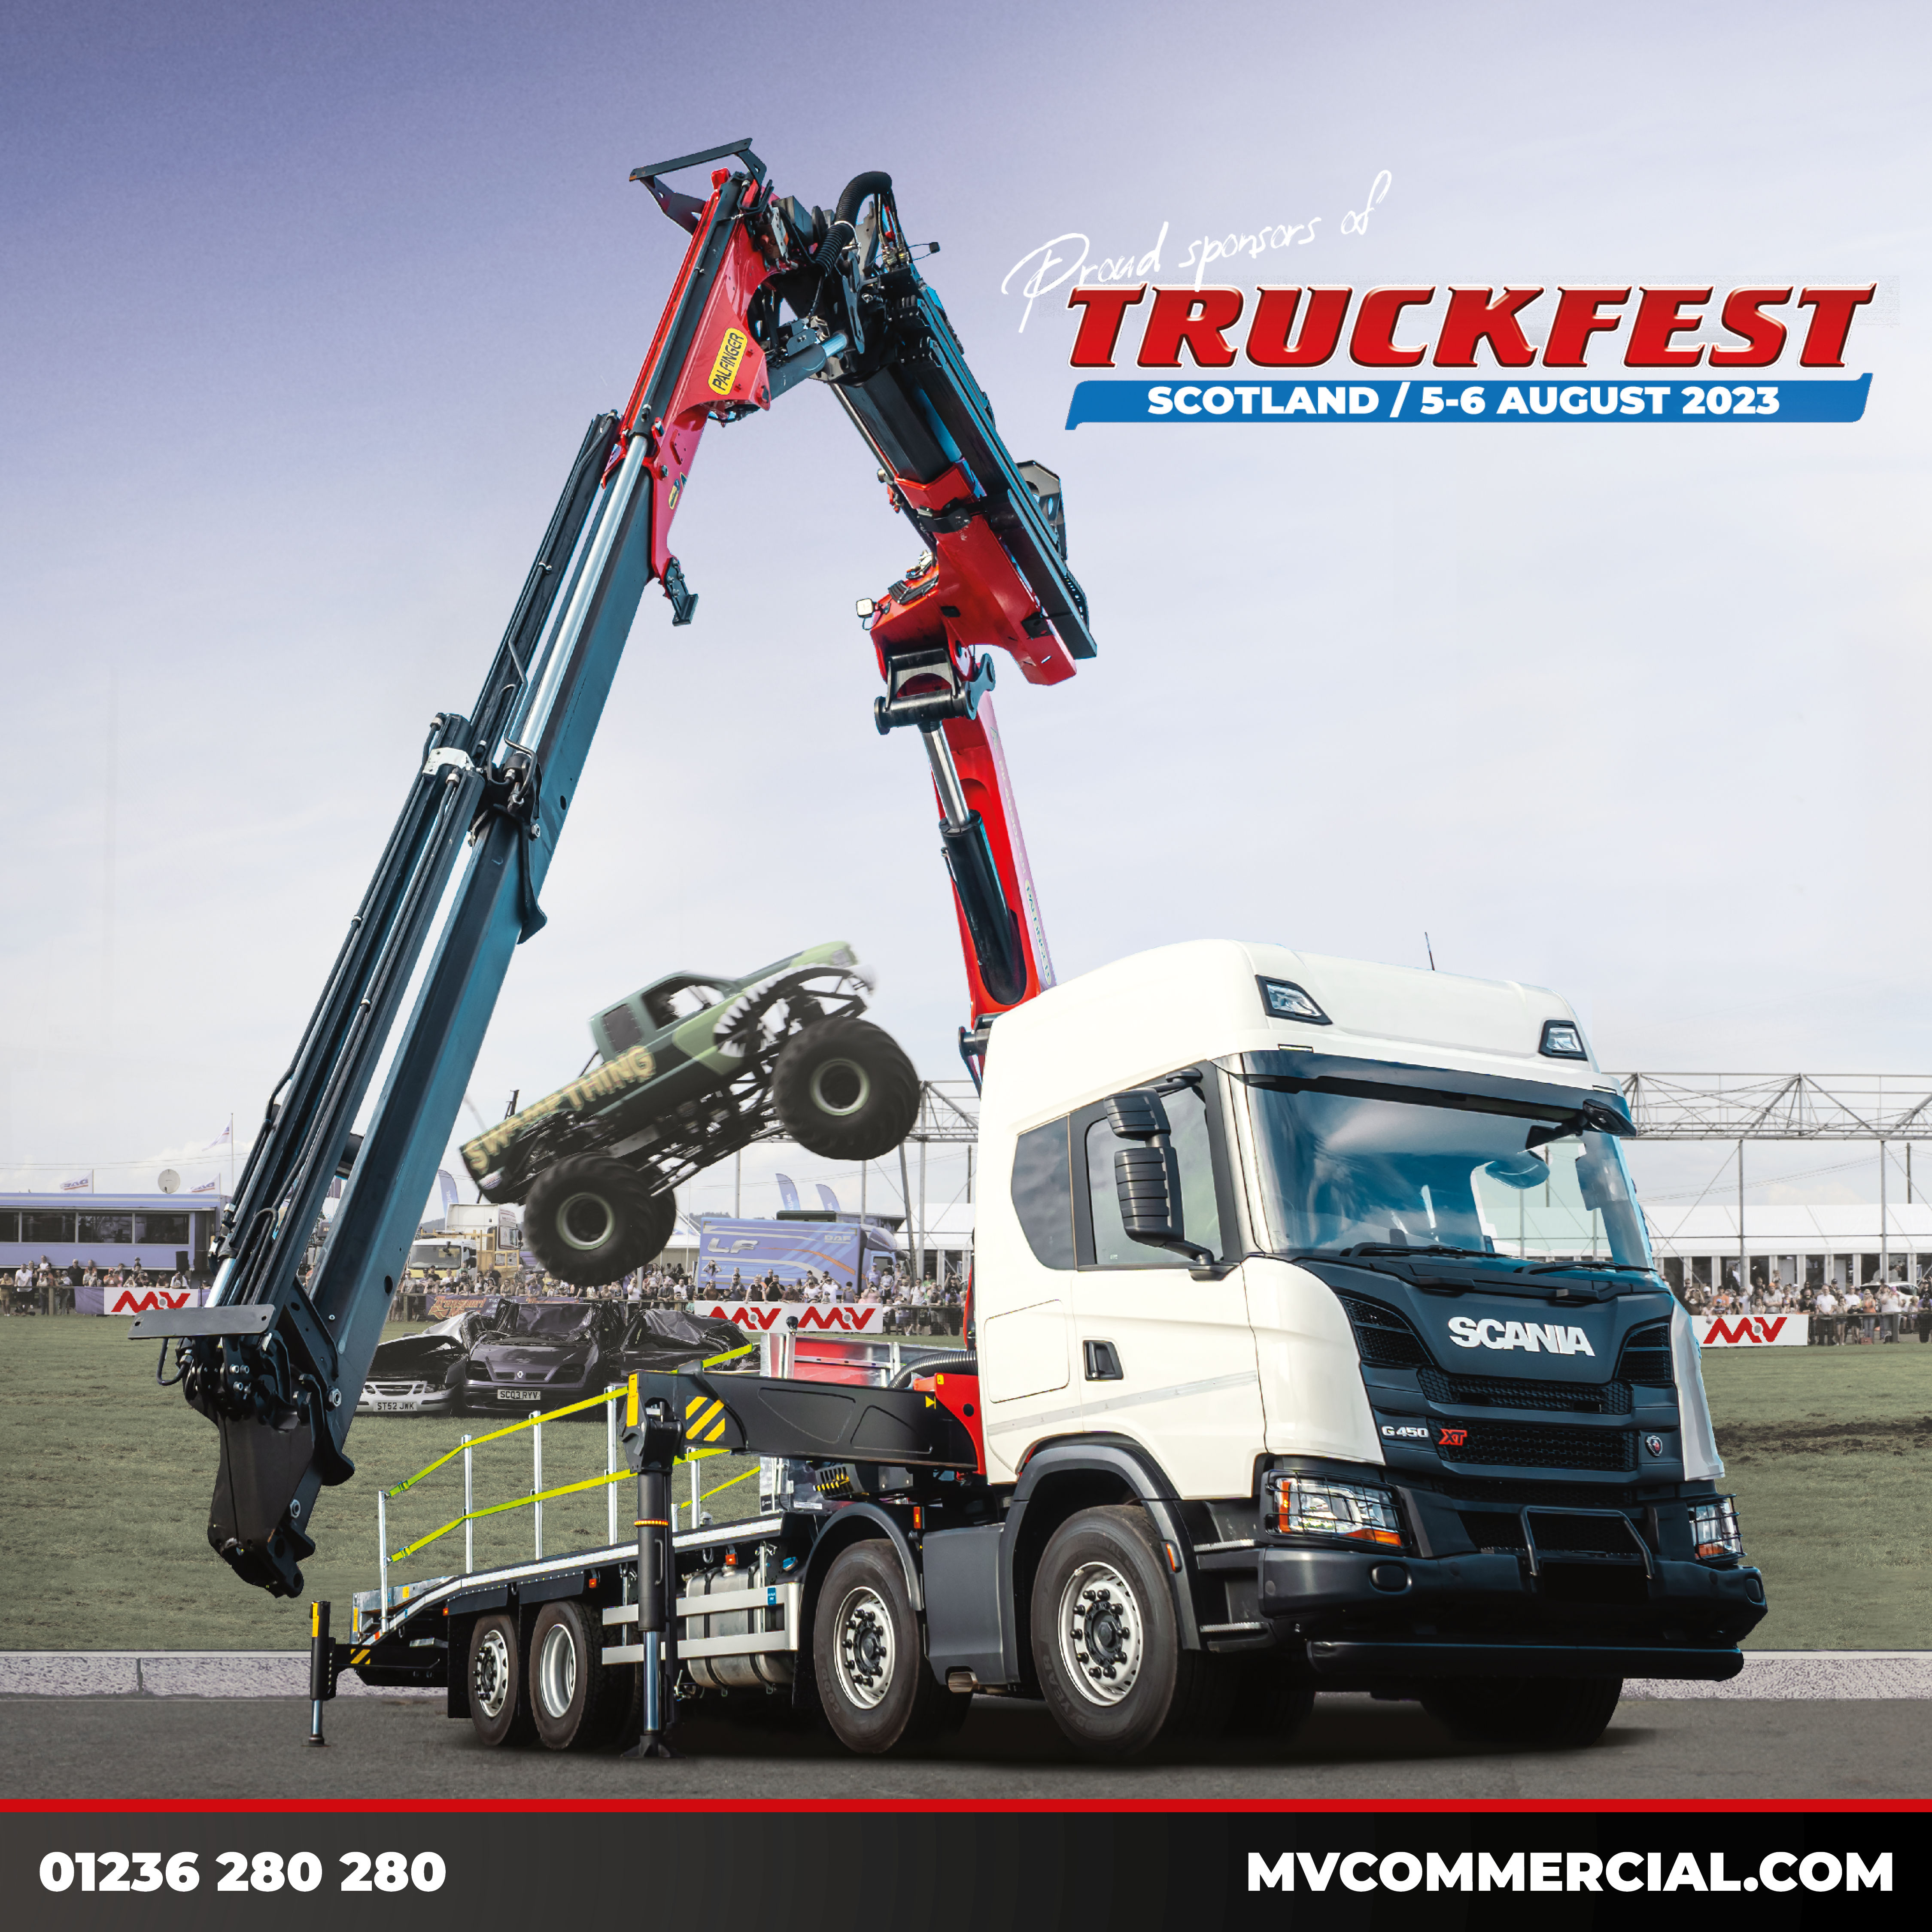 Image for MV Commercial Returns as Headline Sponsor for Truckfest Scotland for 2023